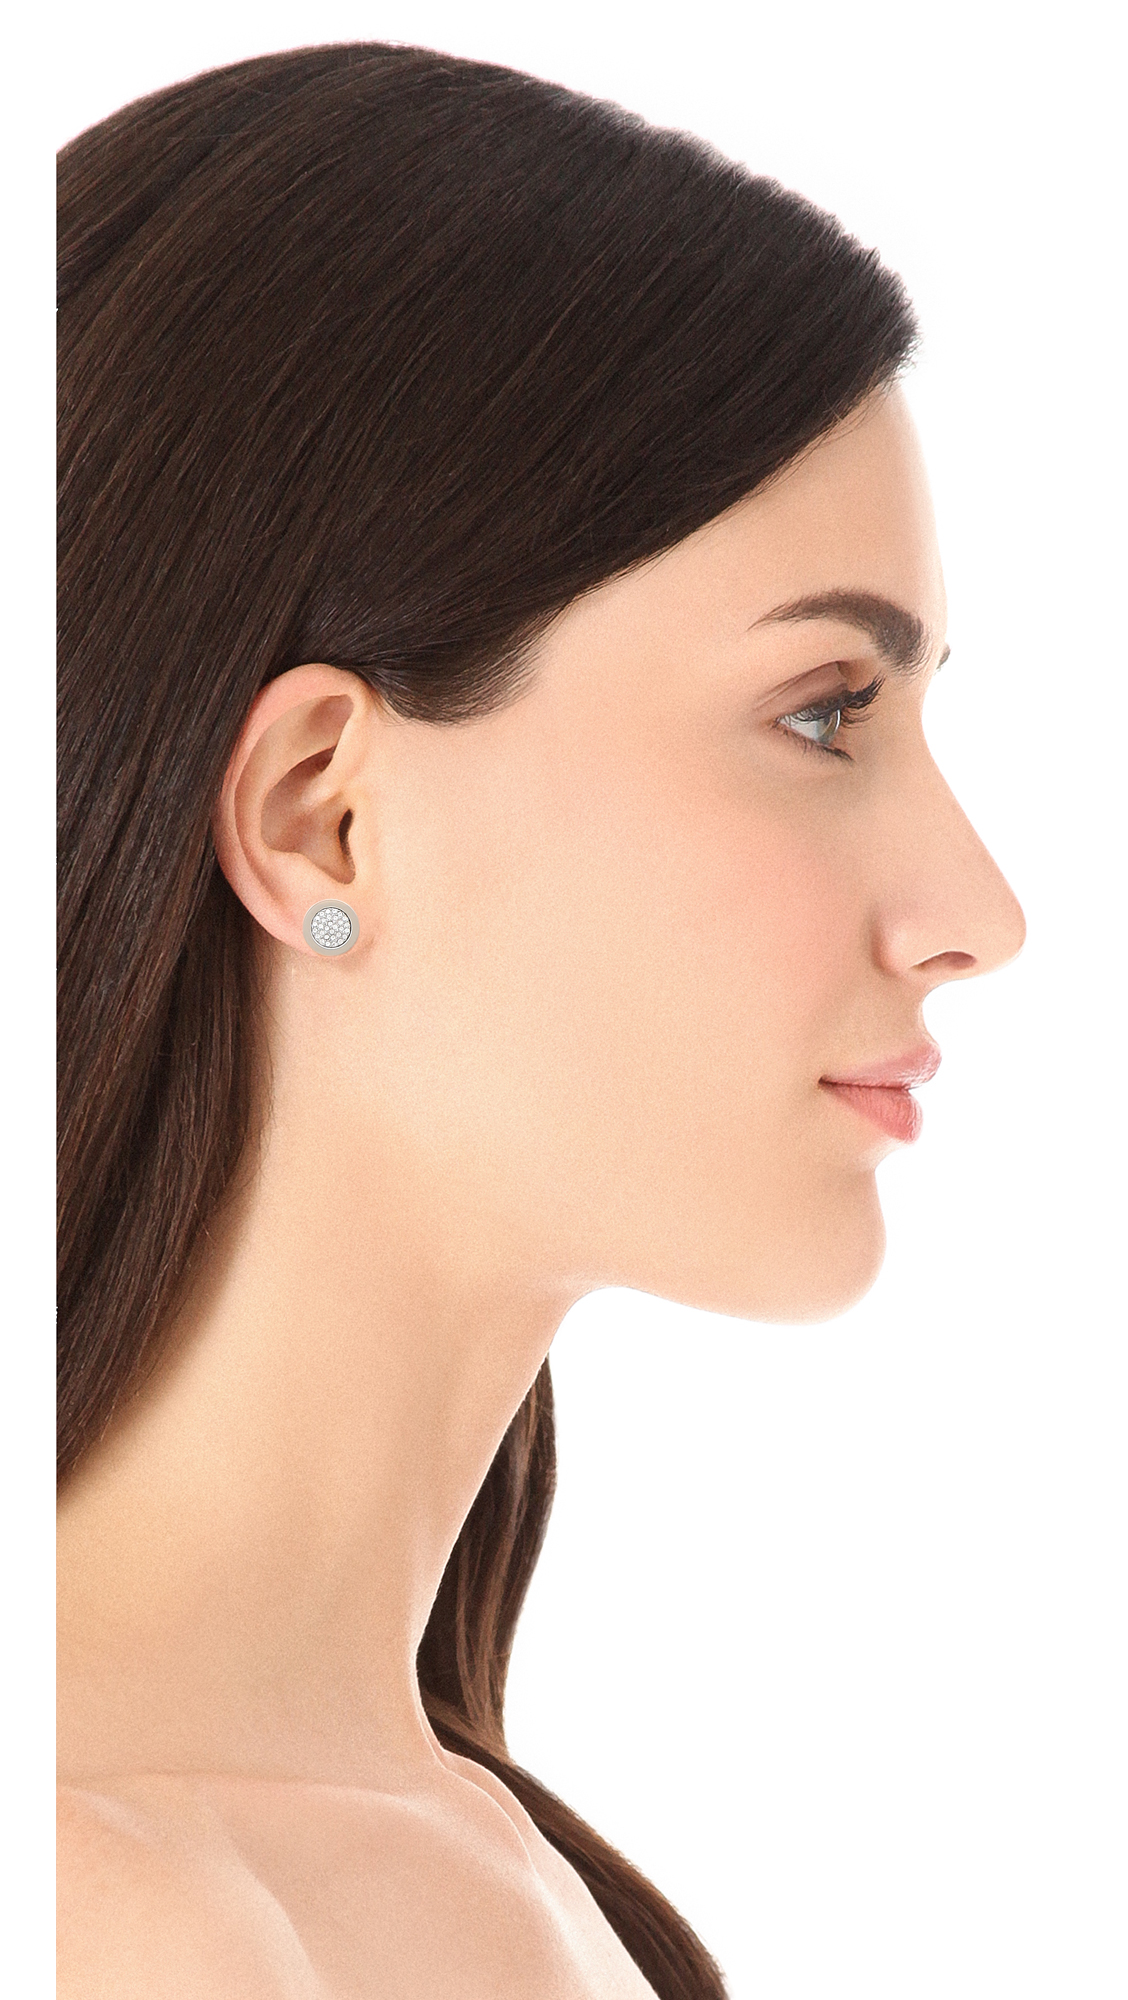 Michael Kors Pave Slice Stud Earrings - Silver in Metallic - Lyst